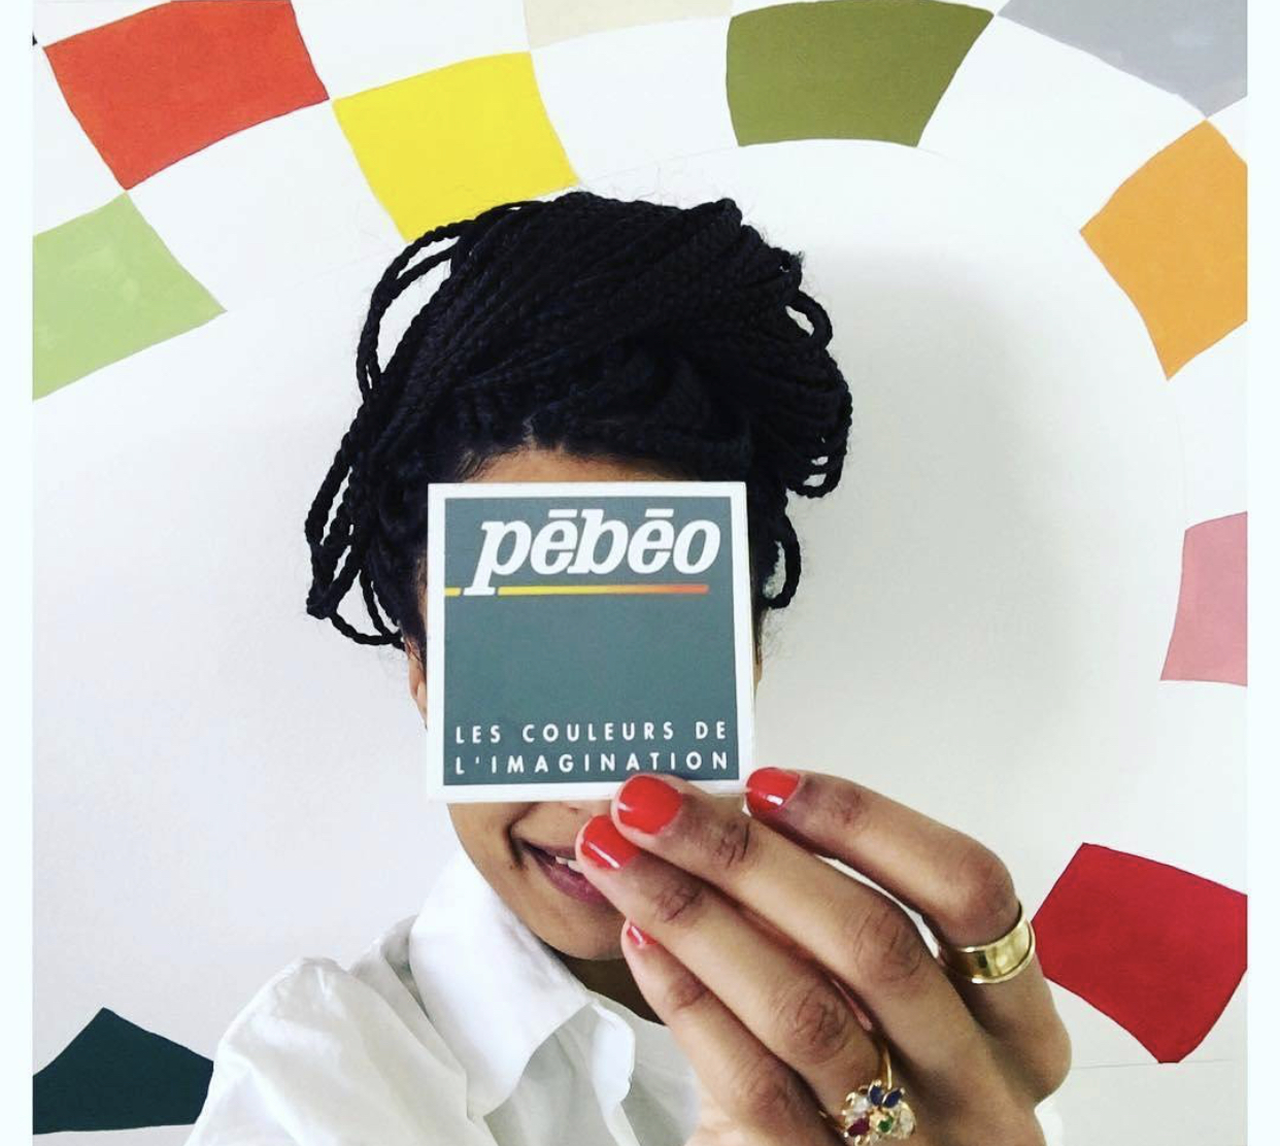 
    Французская компания Pebeo – крупнейший мировой производитель арт-материалов на художественном рынке. Сегодня, компания производит 5 основных групп товаров для творчества: для художников, для графики, для хобби, творчества и декорирования, материалы для детского творчества, инструменты и аксес…